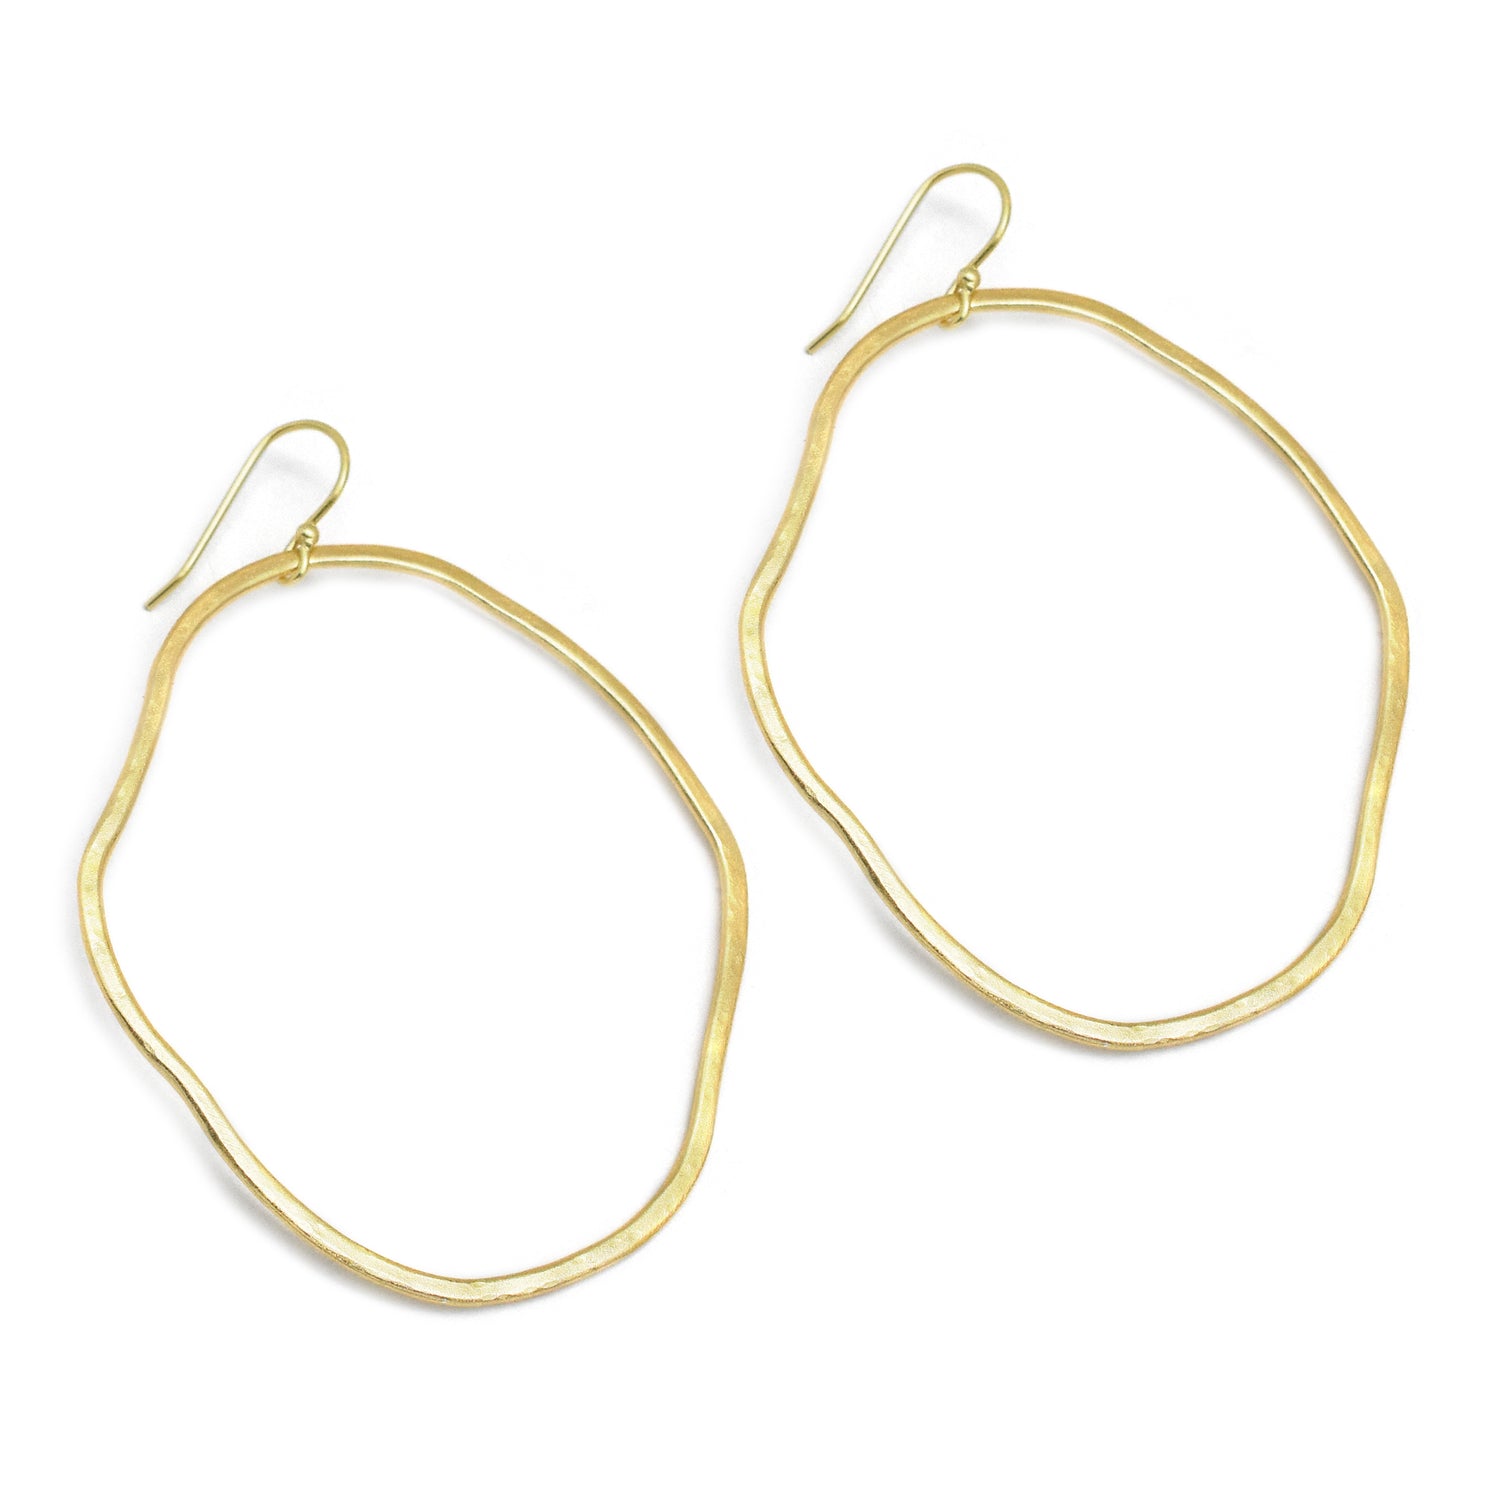 Hammered Free-Form Circle Hoop Earrings Gold Plated Earring - rockflowerpaper